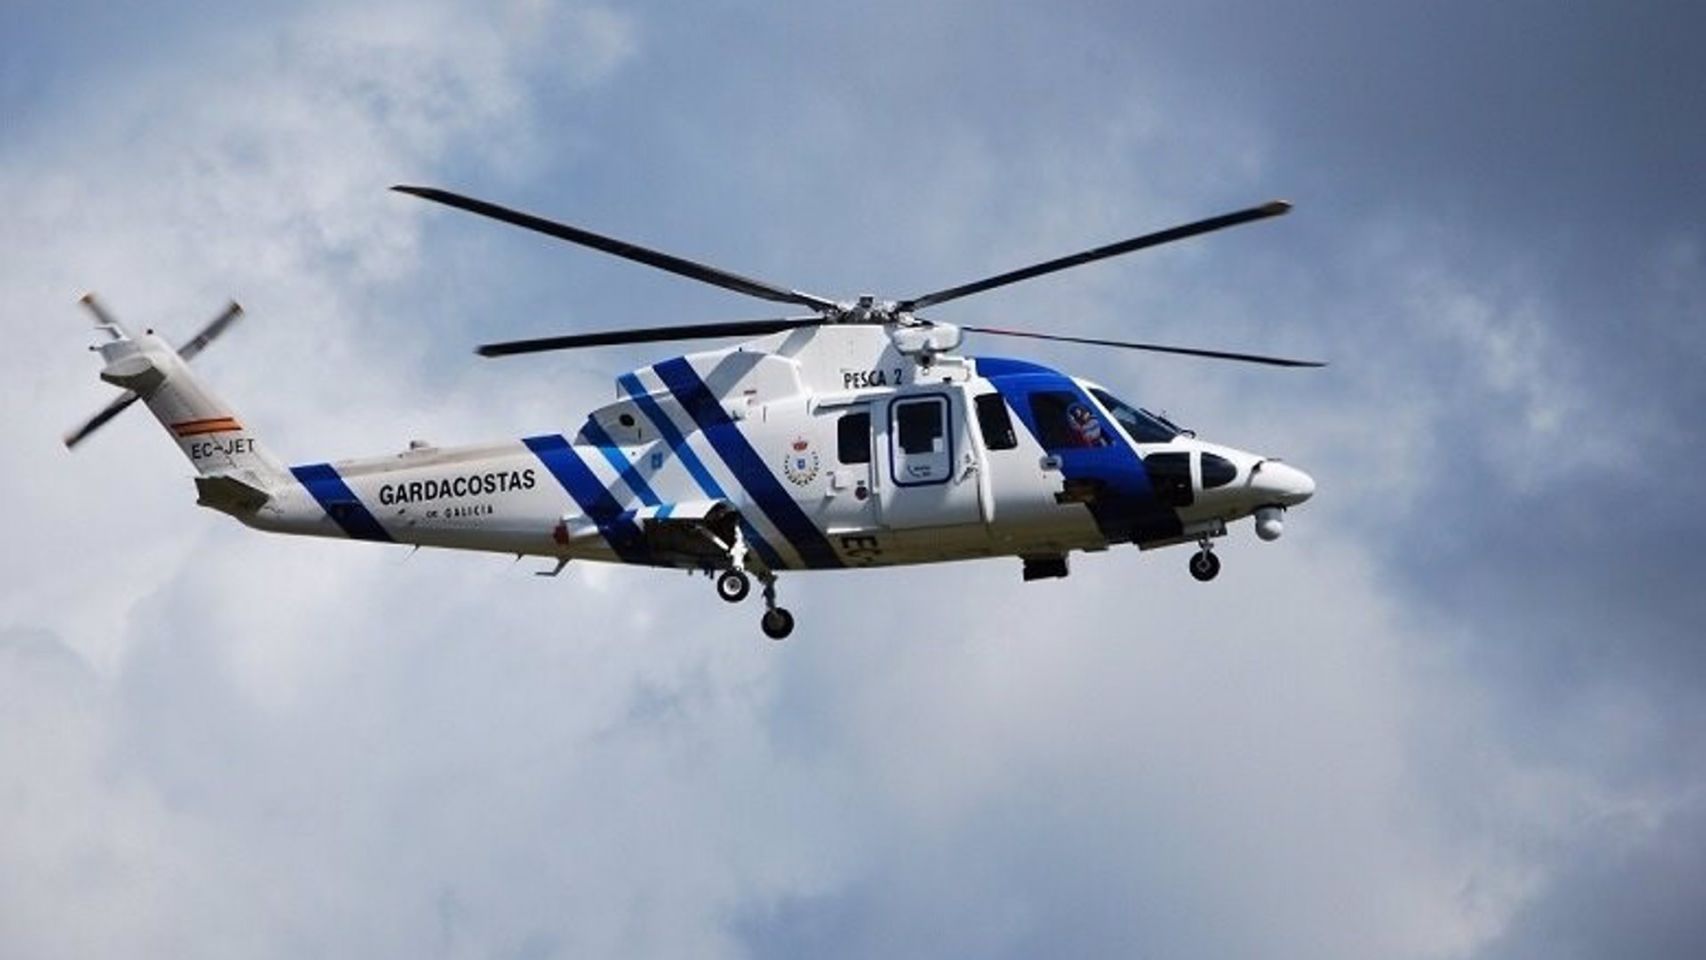 Helicóptero 'Pesca II' de Gardacostas de Galicia.
SOCIEDAD ESPAÑA EUROPA GALICIA AUTONOMÍAS
SALVAMENTO MARÍTIMO